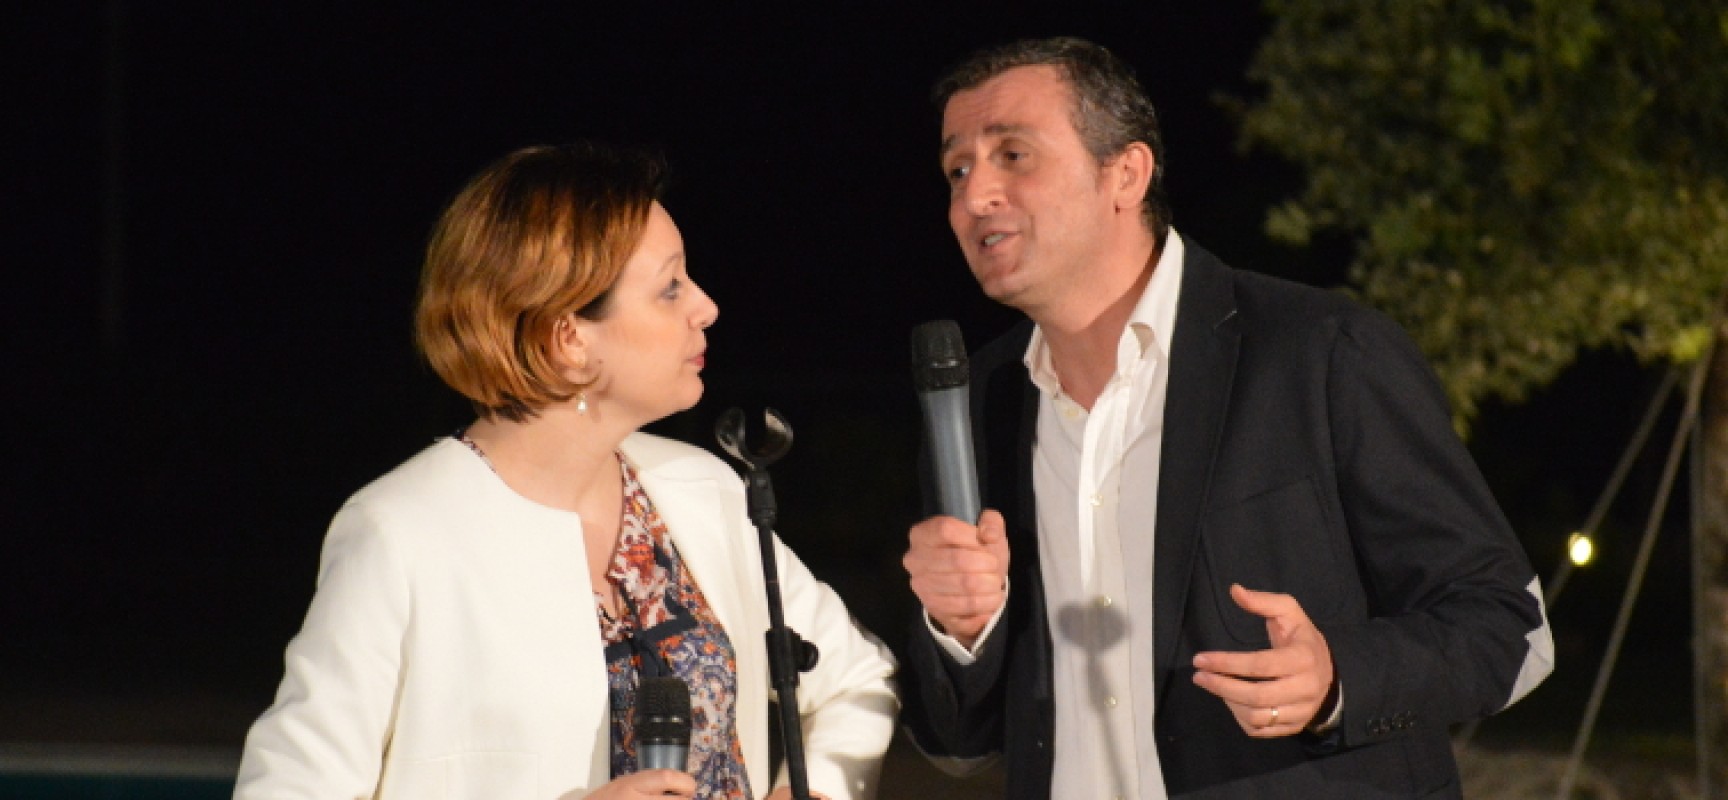 Carlo Monopoli e Raffaella Montini portano in scena la comicità con “Rido e… canto quel motivetto”